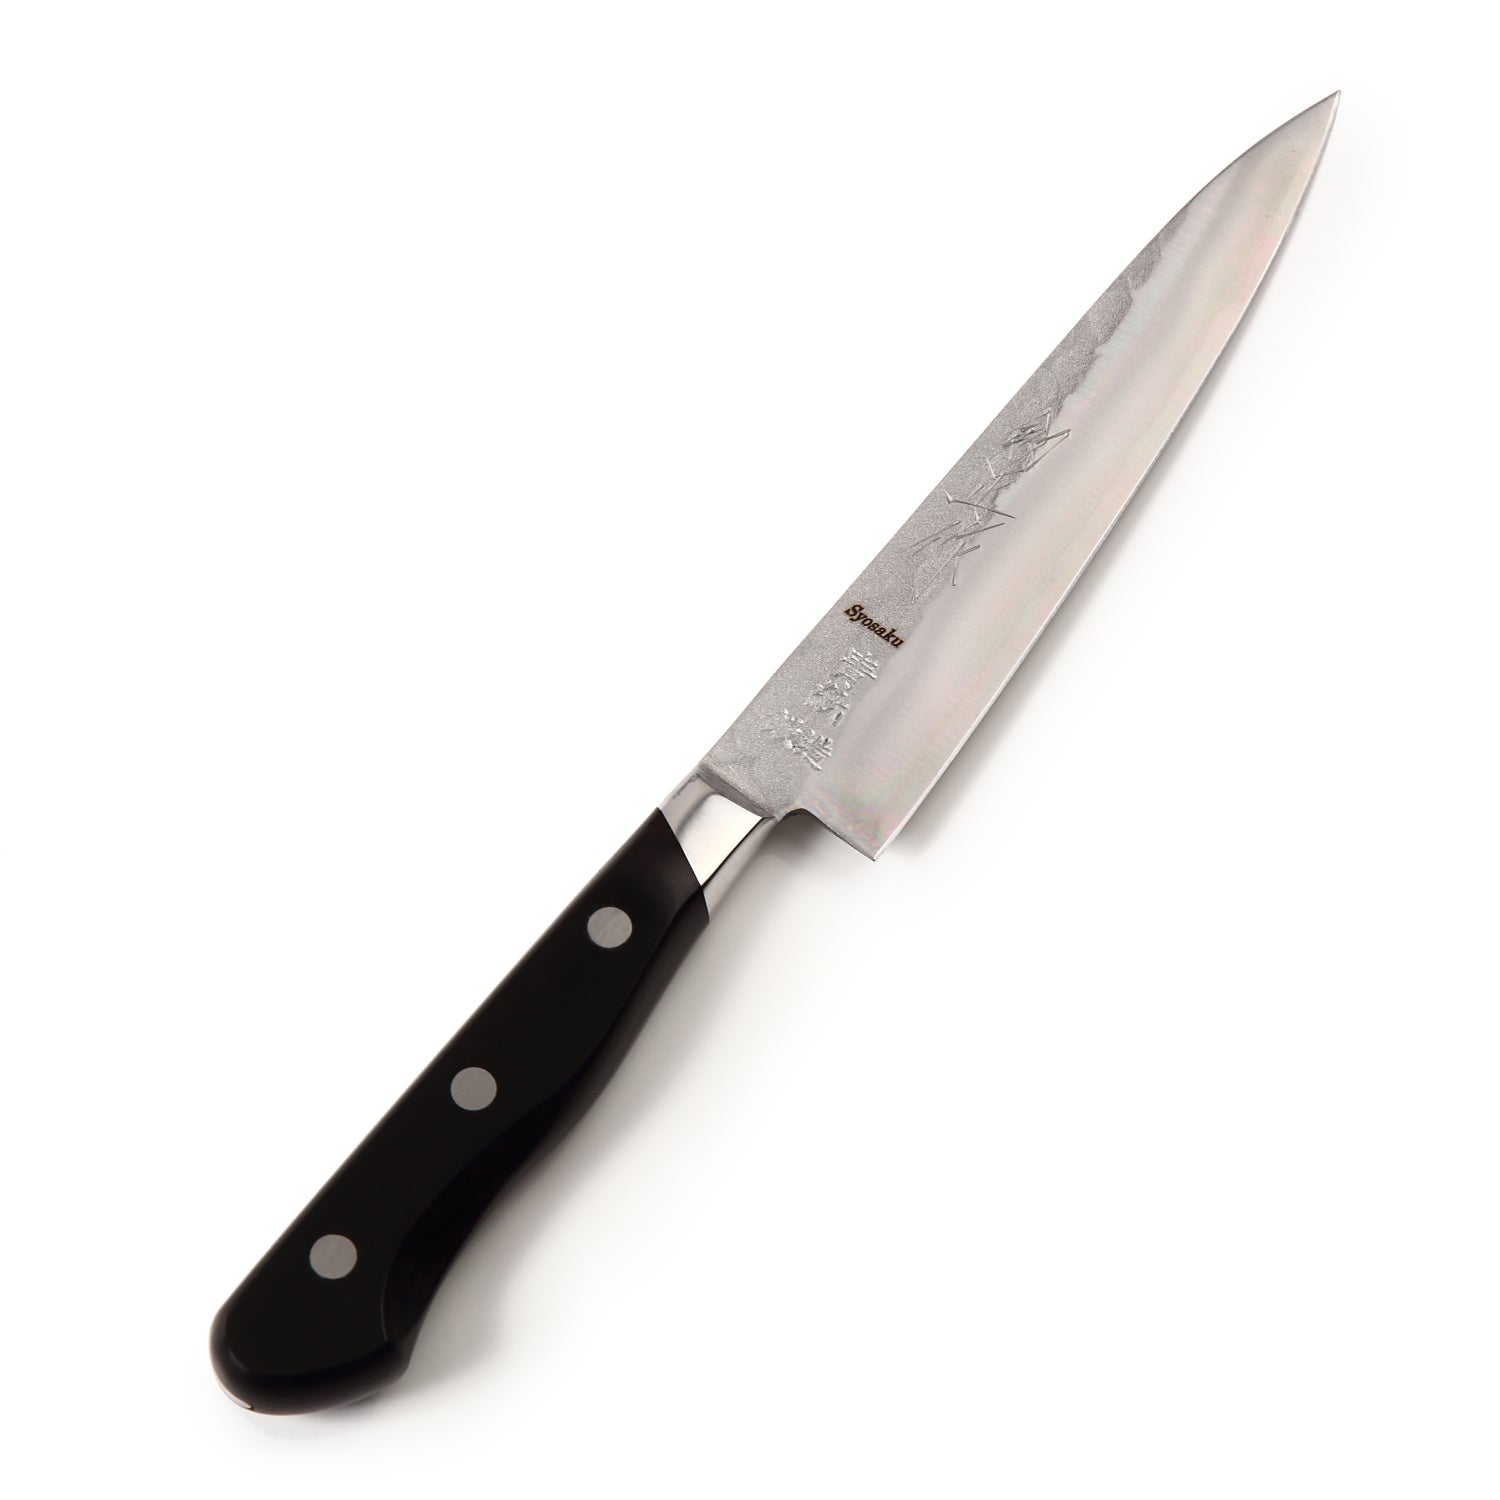 Syosaku Japanese Petty Knife Aoko (Blue Steel) No.2 Black Pakkawood Handle, 5.3-inch (135mm)